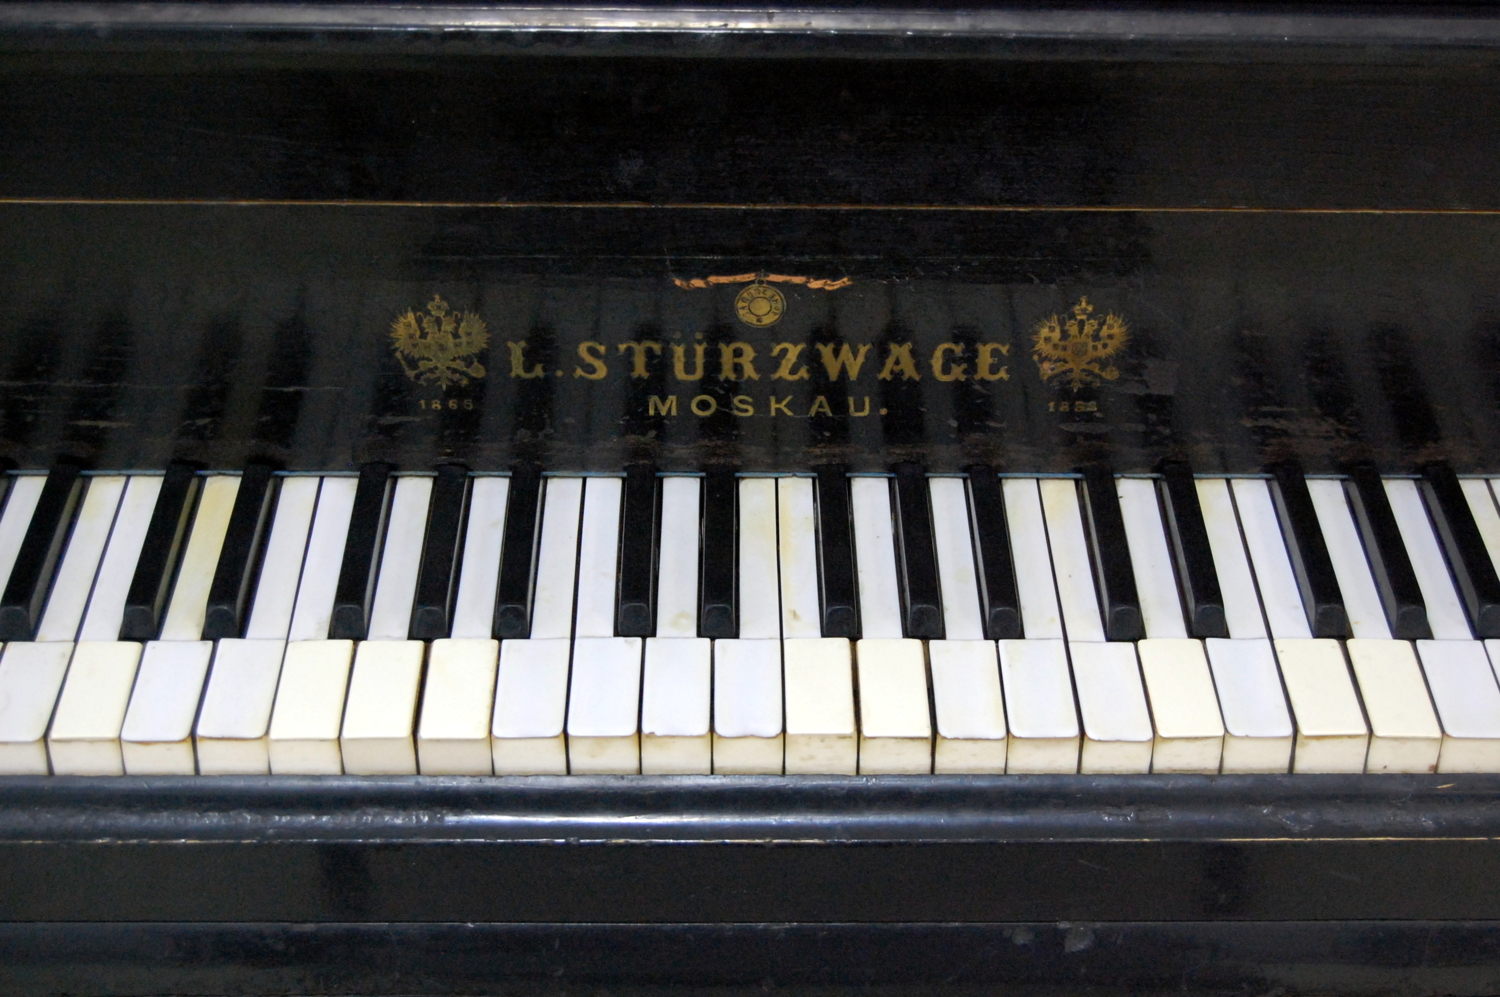 Старинный рояль